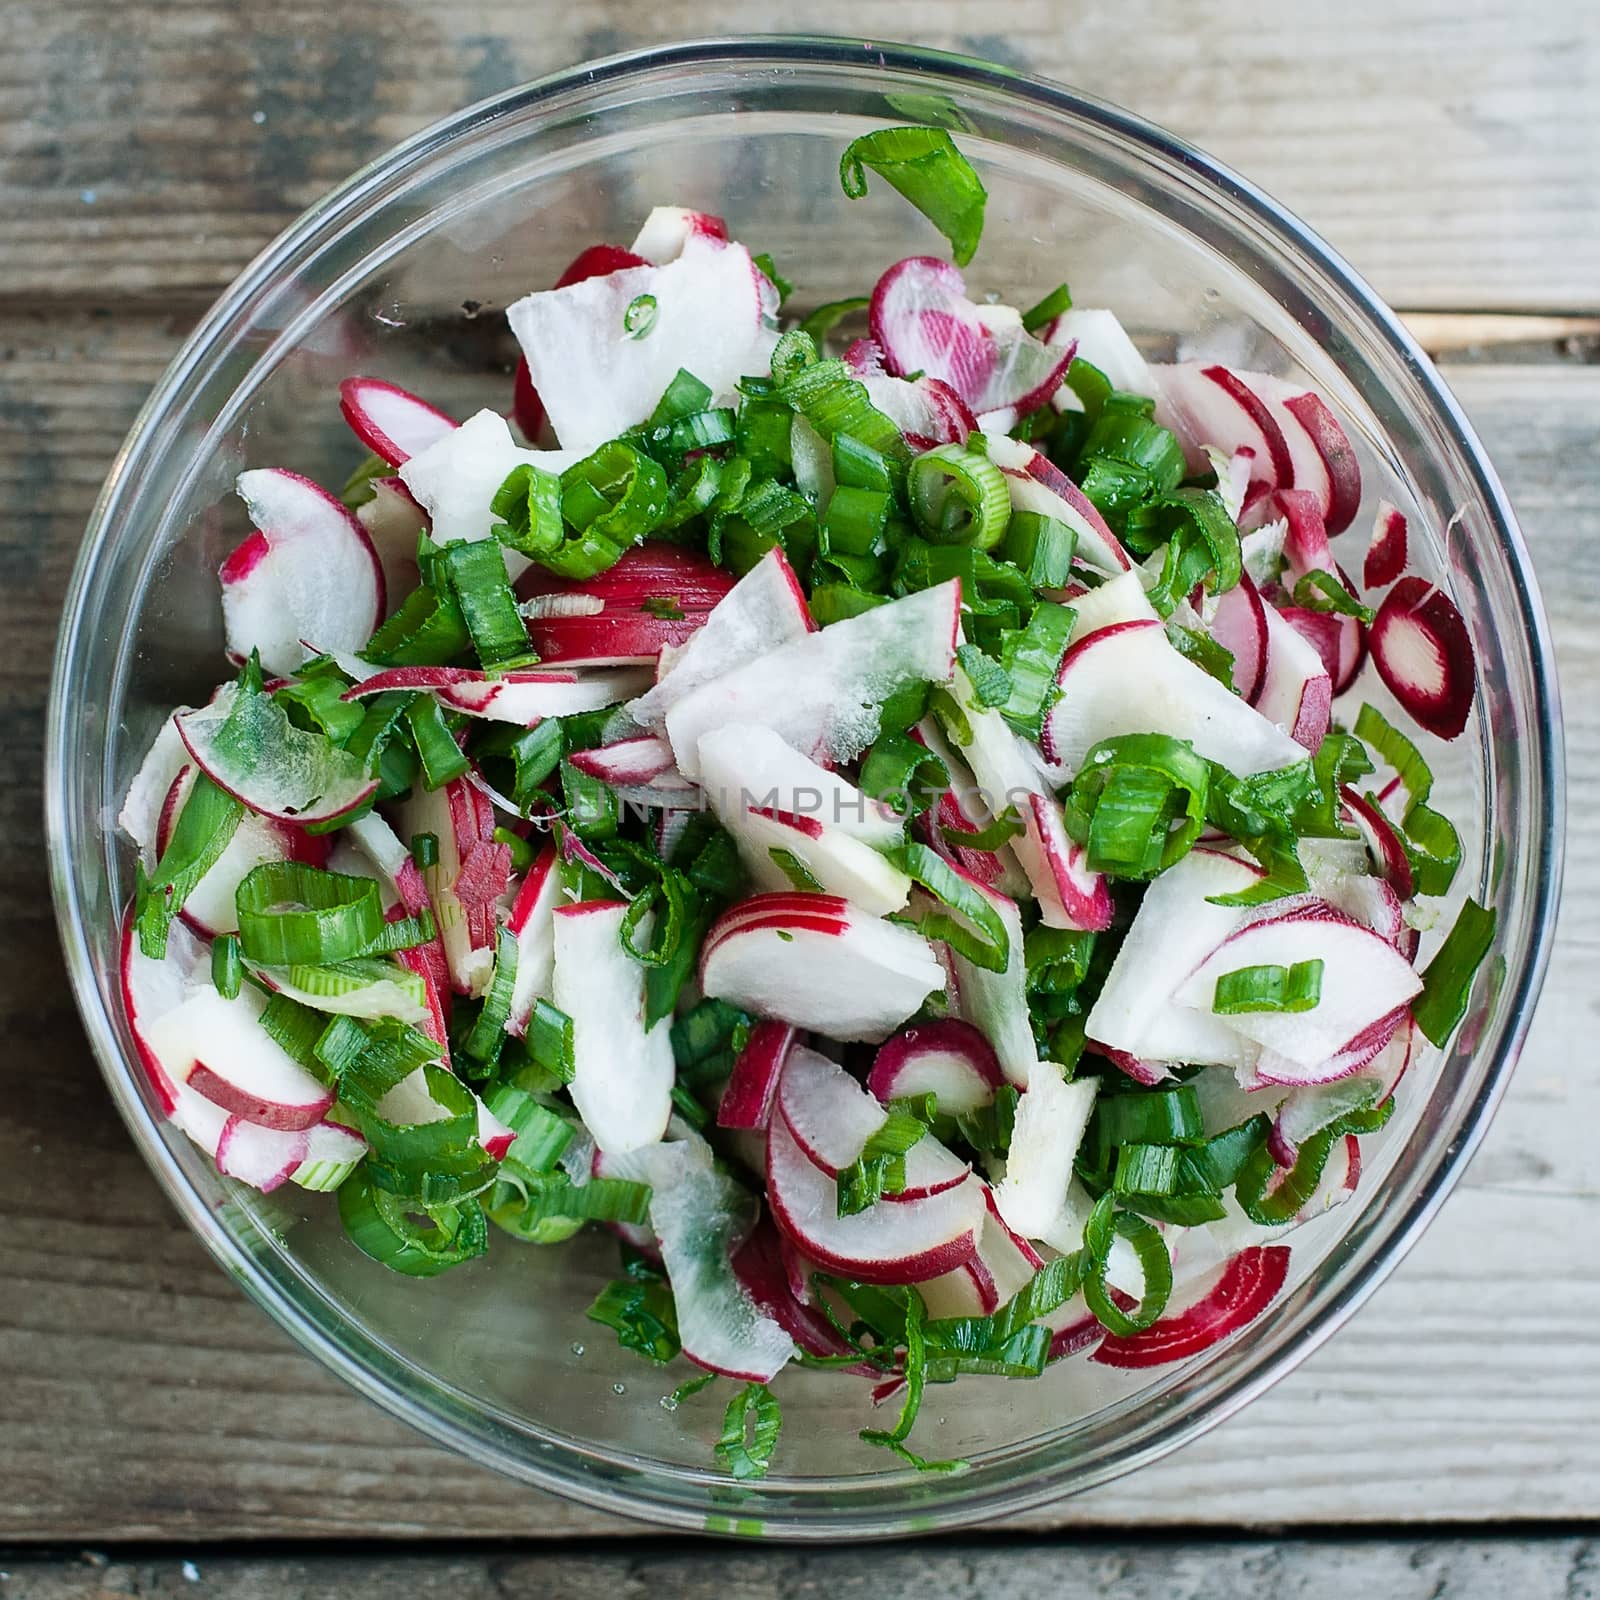 Raddish salad by dazhetak